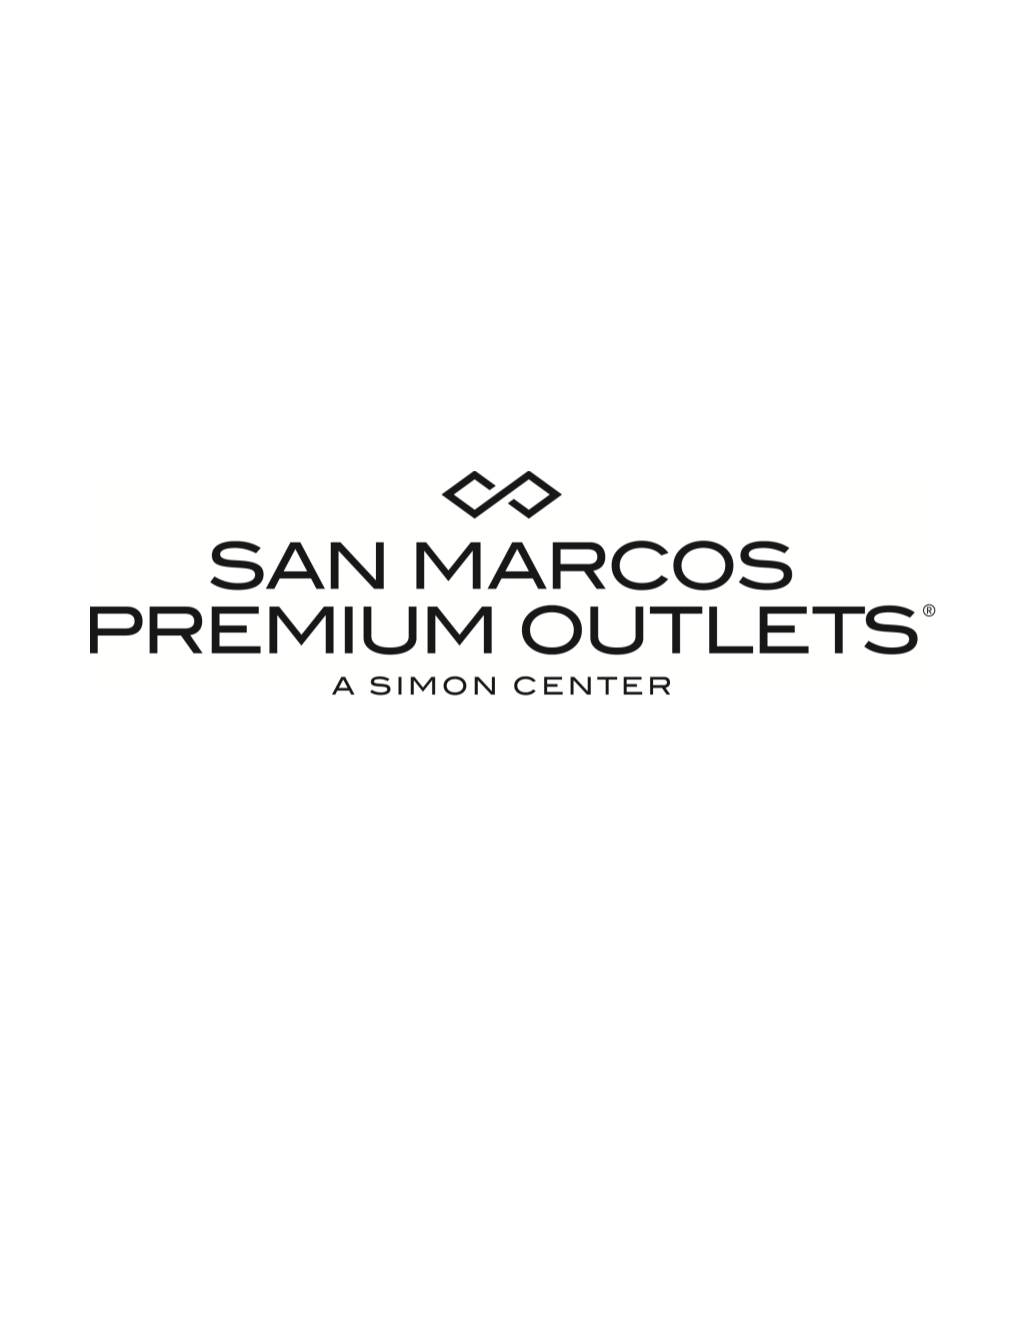 SAN MARCOS Premium Outlets